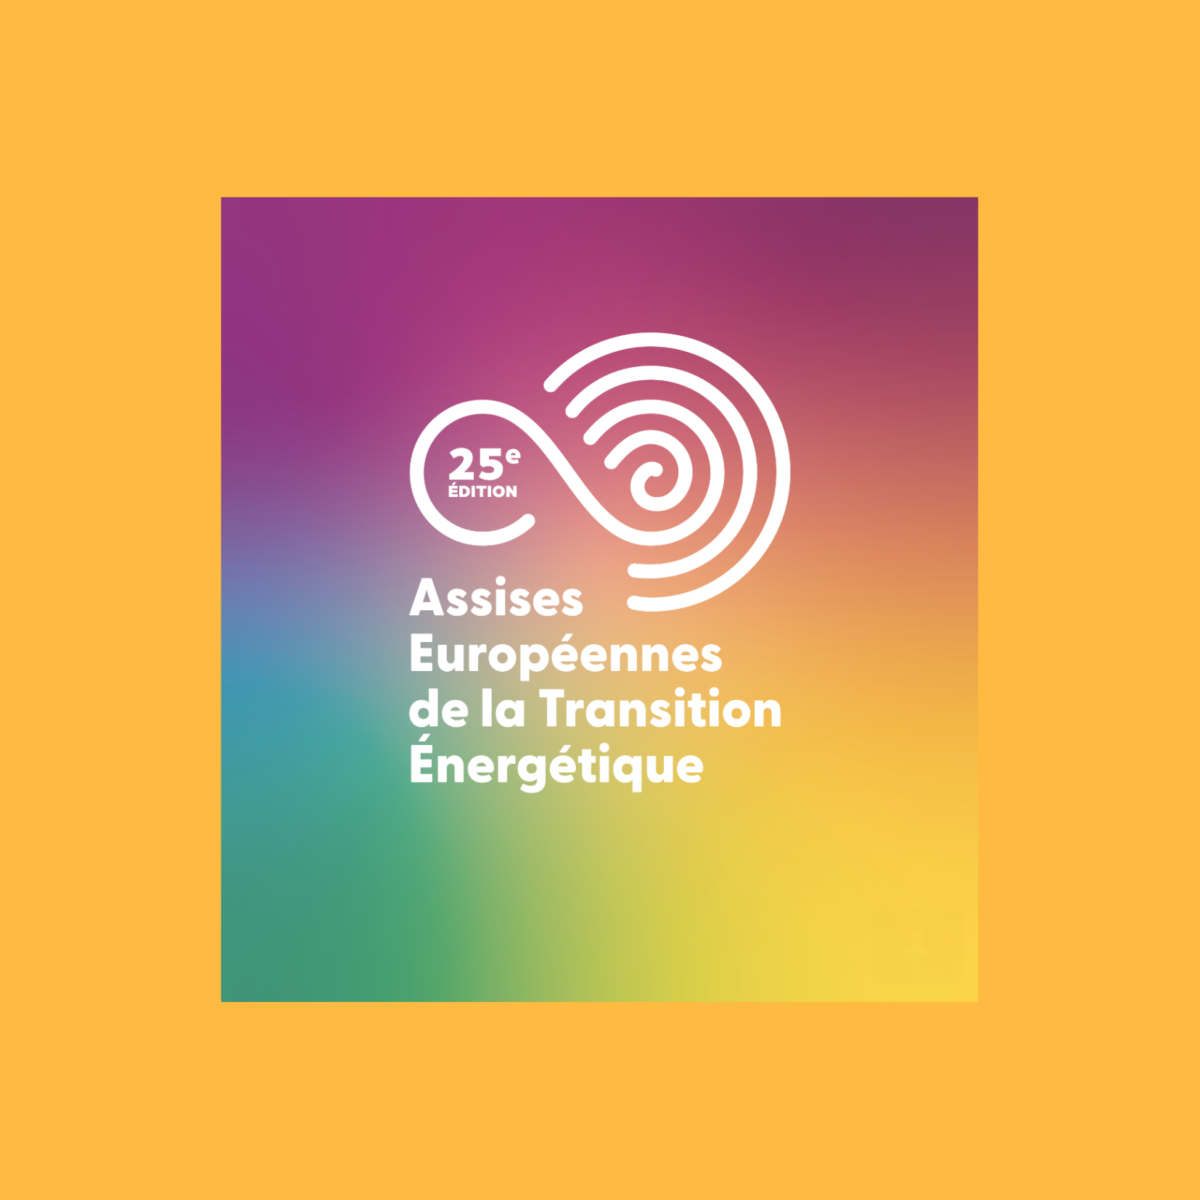 25ème édition des Assises Européennes de la Transition Energétique